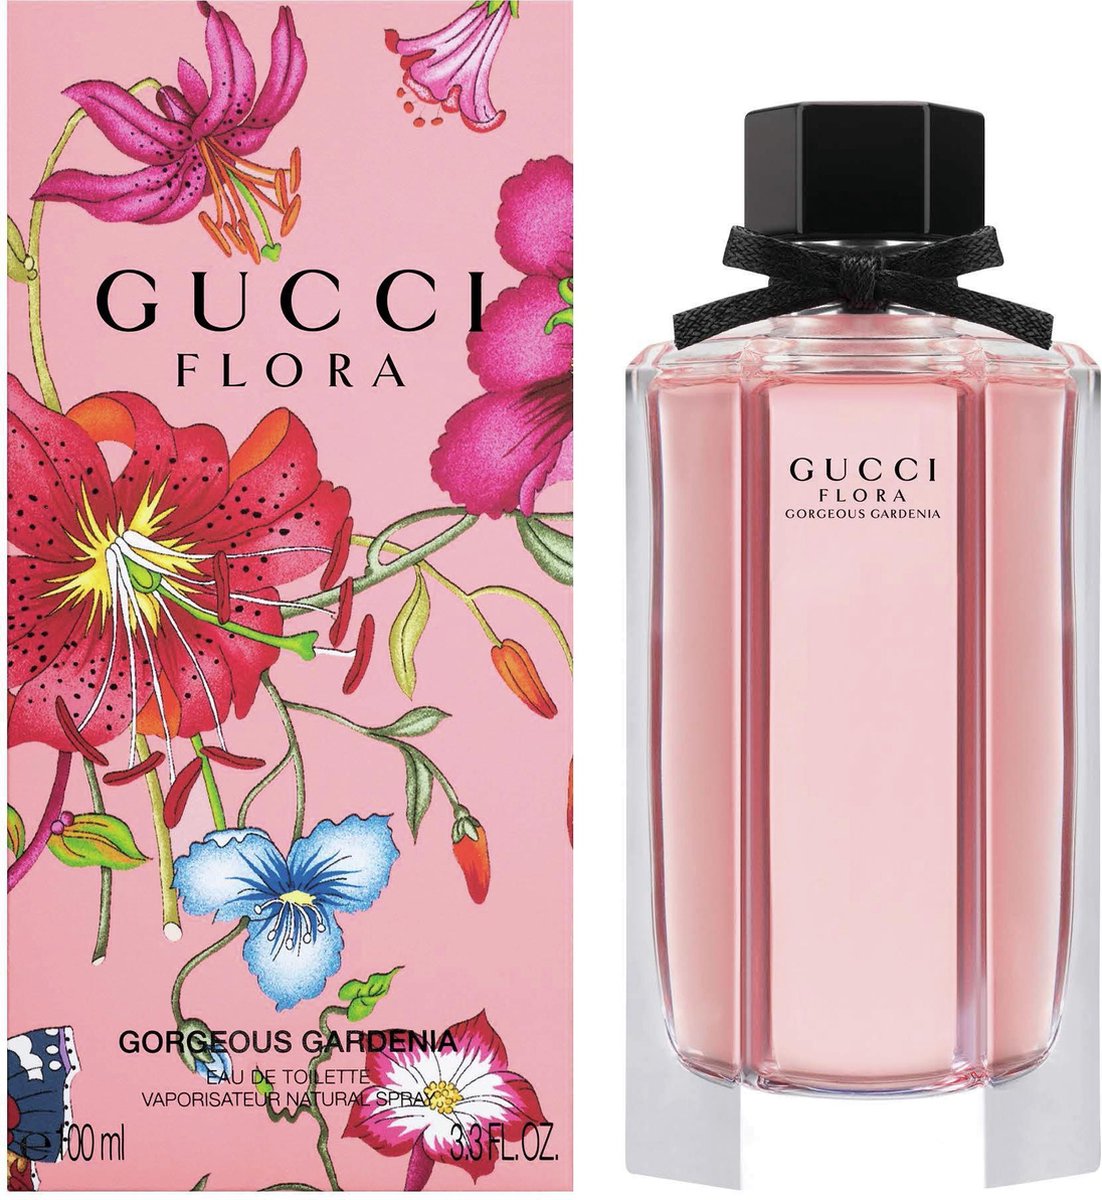 Gucci Flora 100 Ml Hot Sale, SAVE 49% - vsil.no